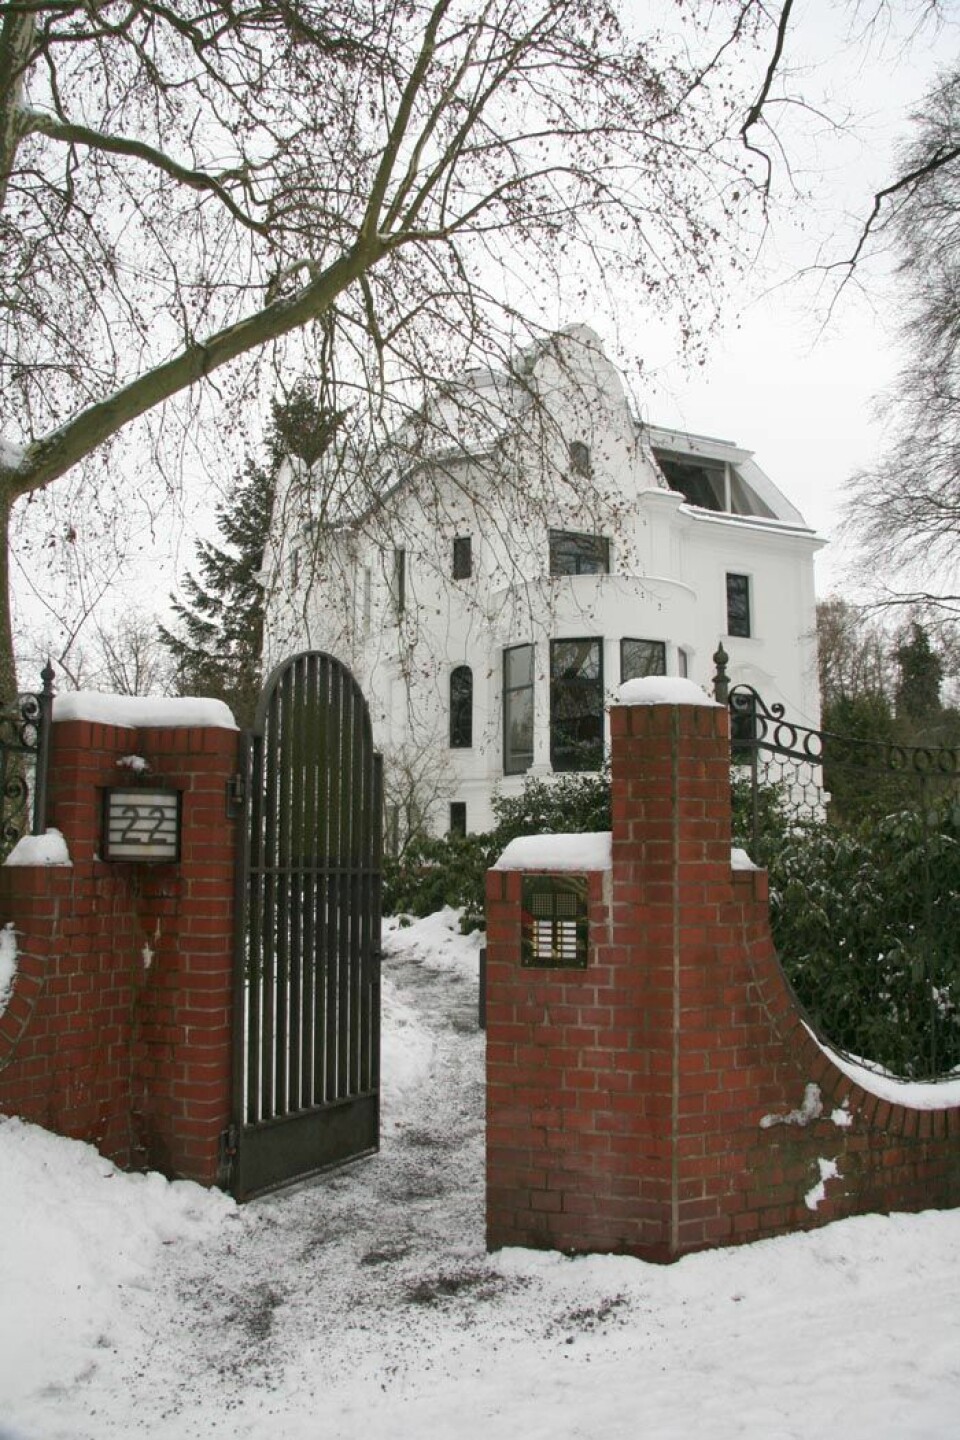 I den hvite villaen finner man et velassortert bibliotek, samt gjesterom på kvisten. Huset ble bygd i 1911, som en av de første privatboligene i det vakre Grunewald-området. (Foto: Ingrid Spilde)